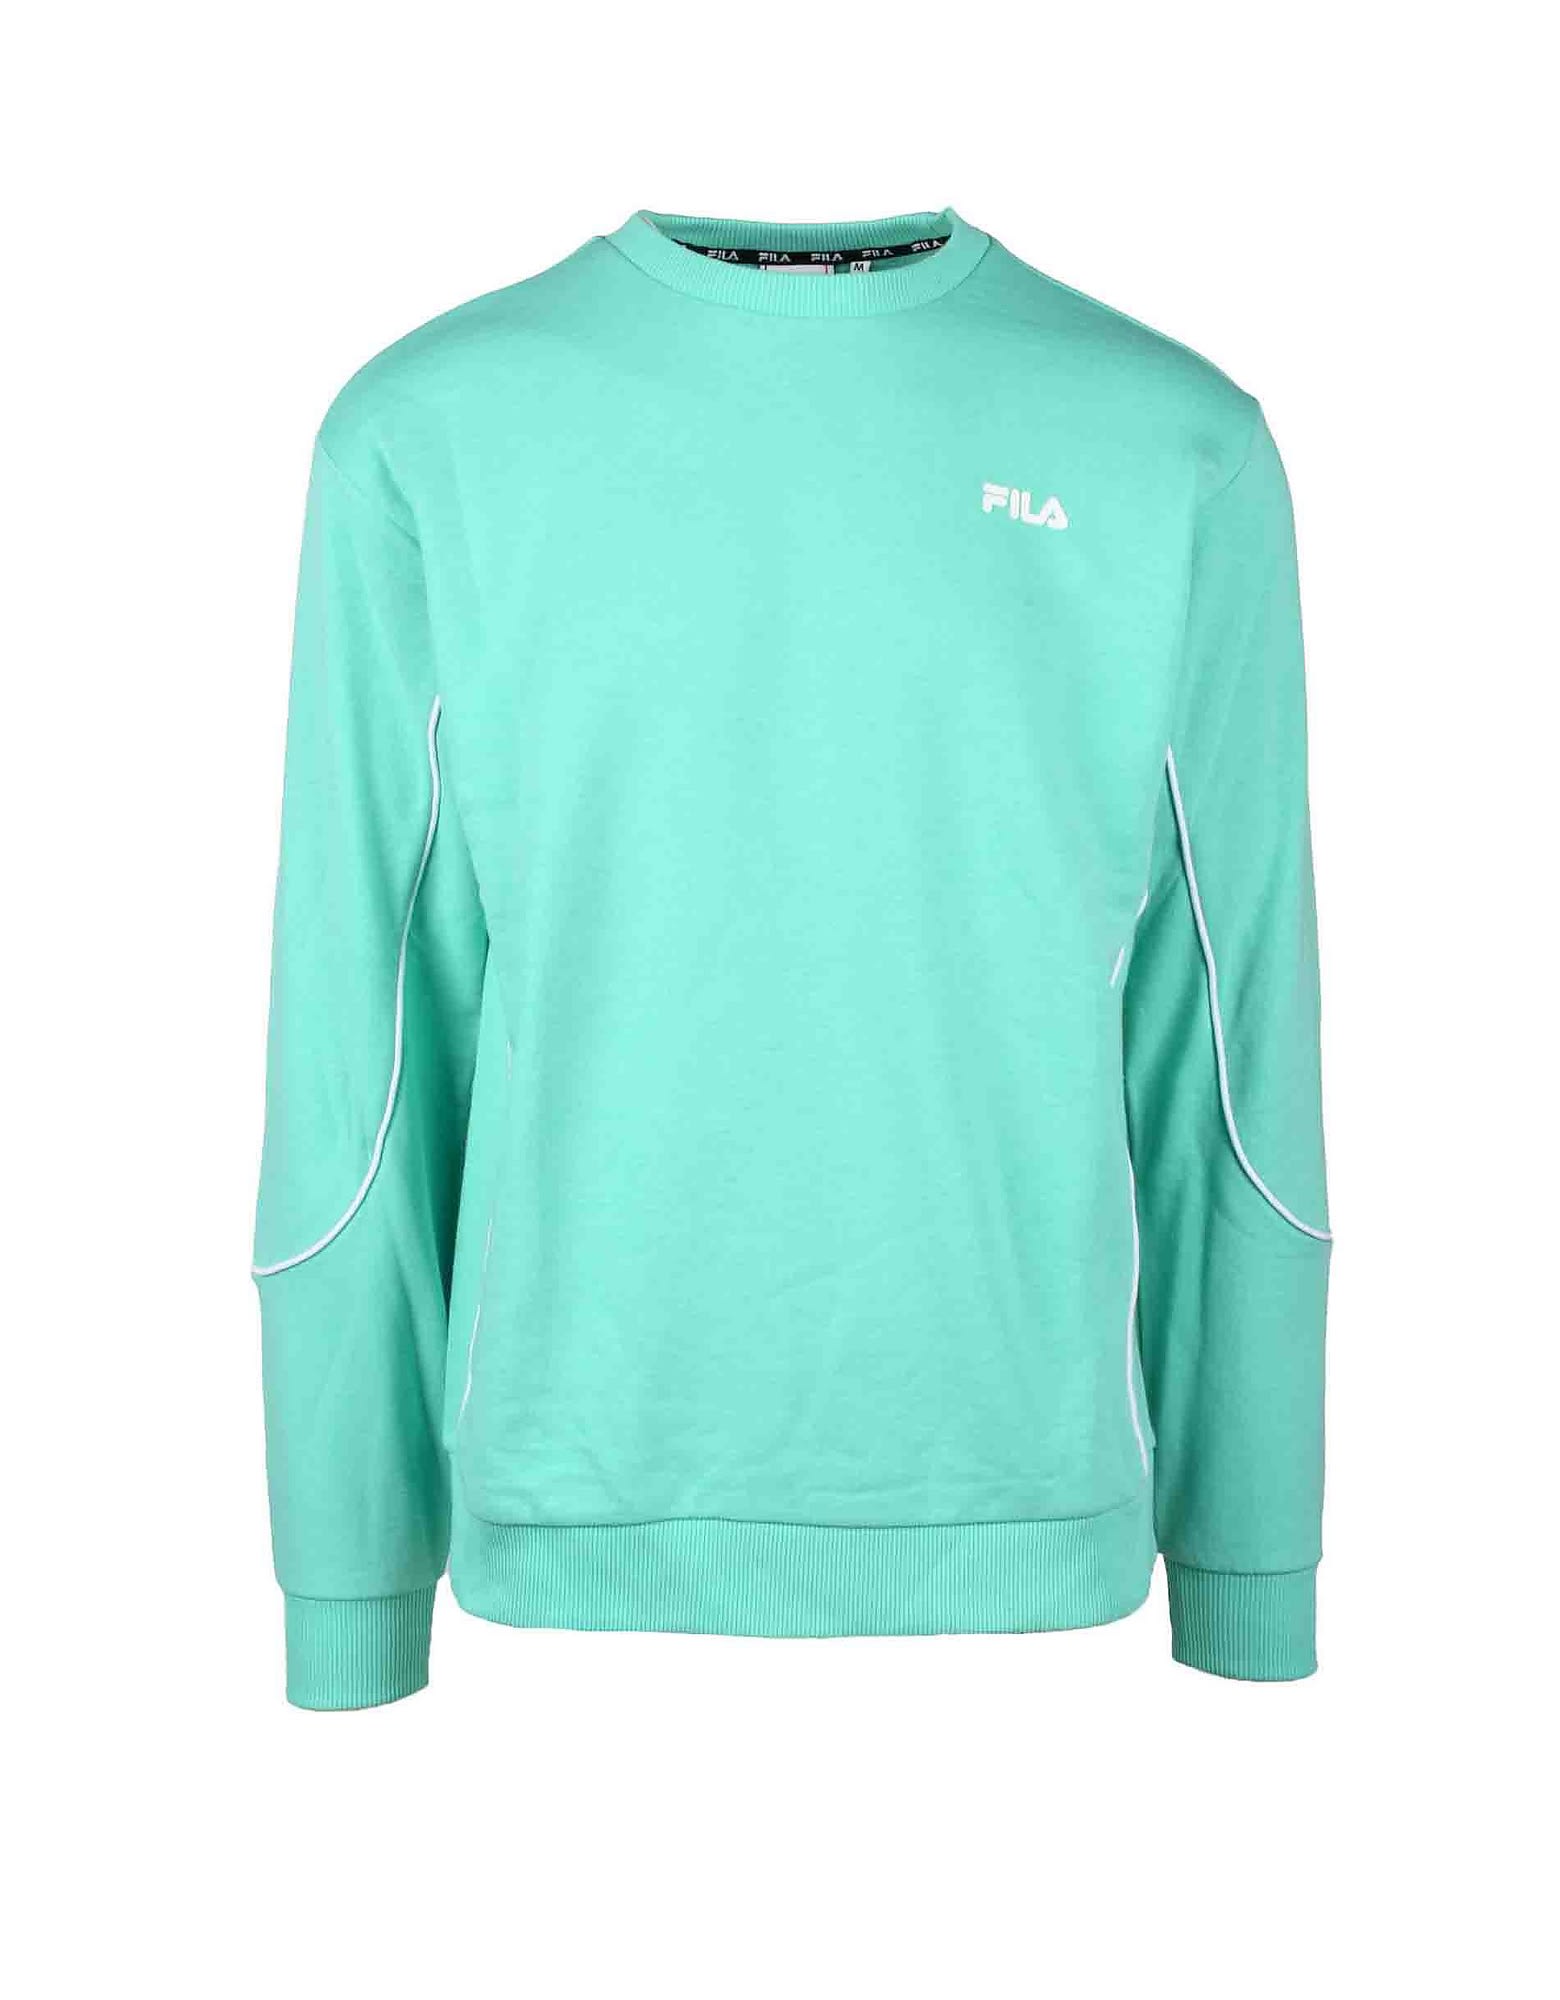 Fila Mens Aqua Sweatshirt